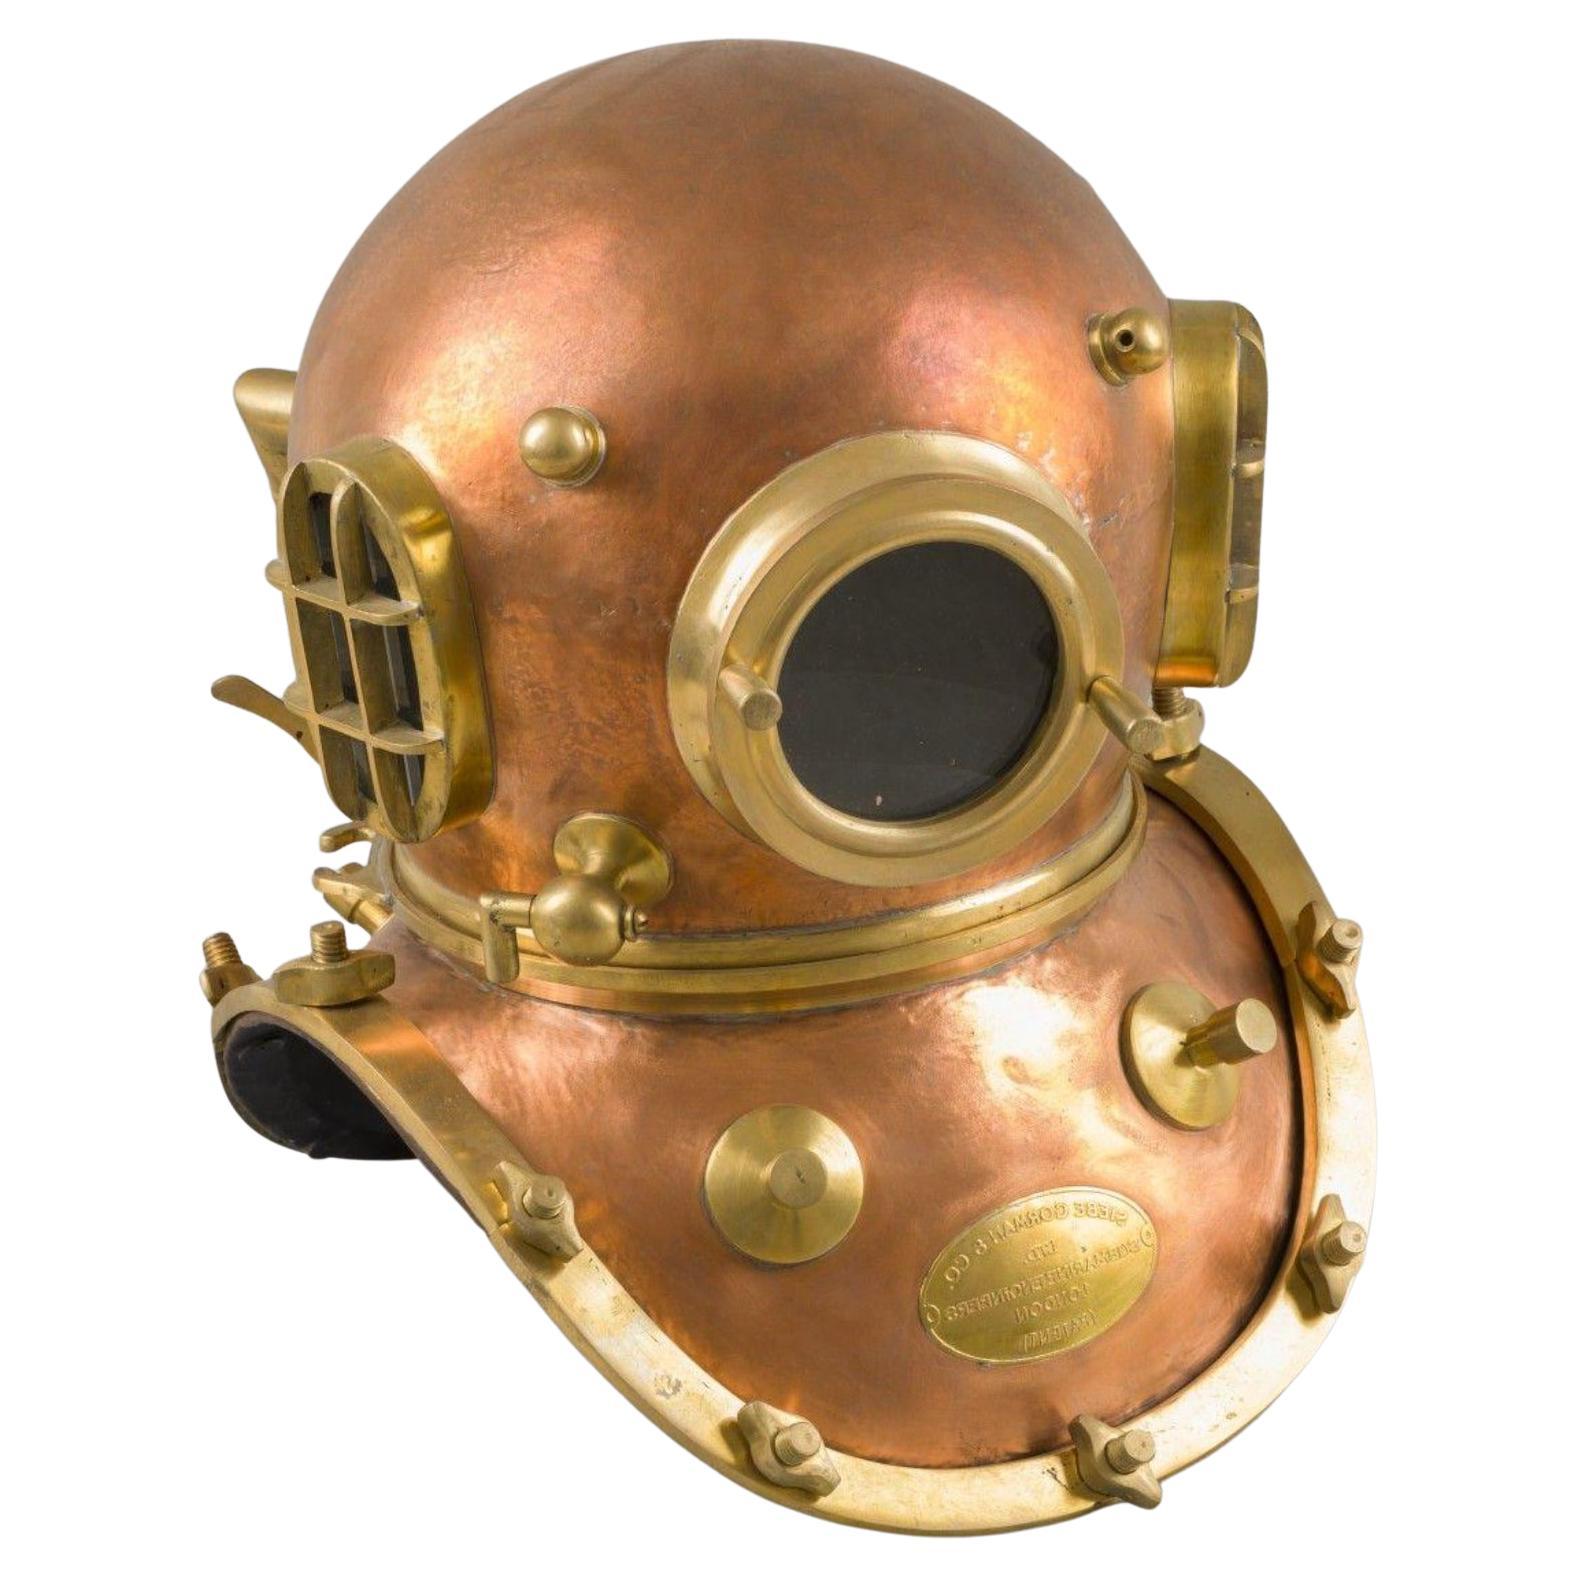 Replica Brass 12-Bolt Siebe Gorman & Co. Diving Helmet